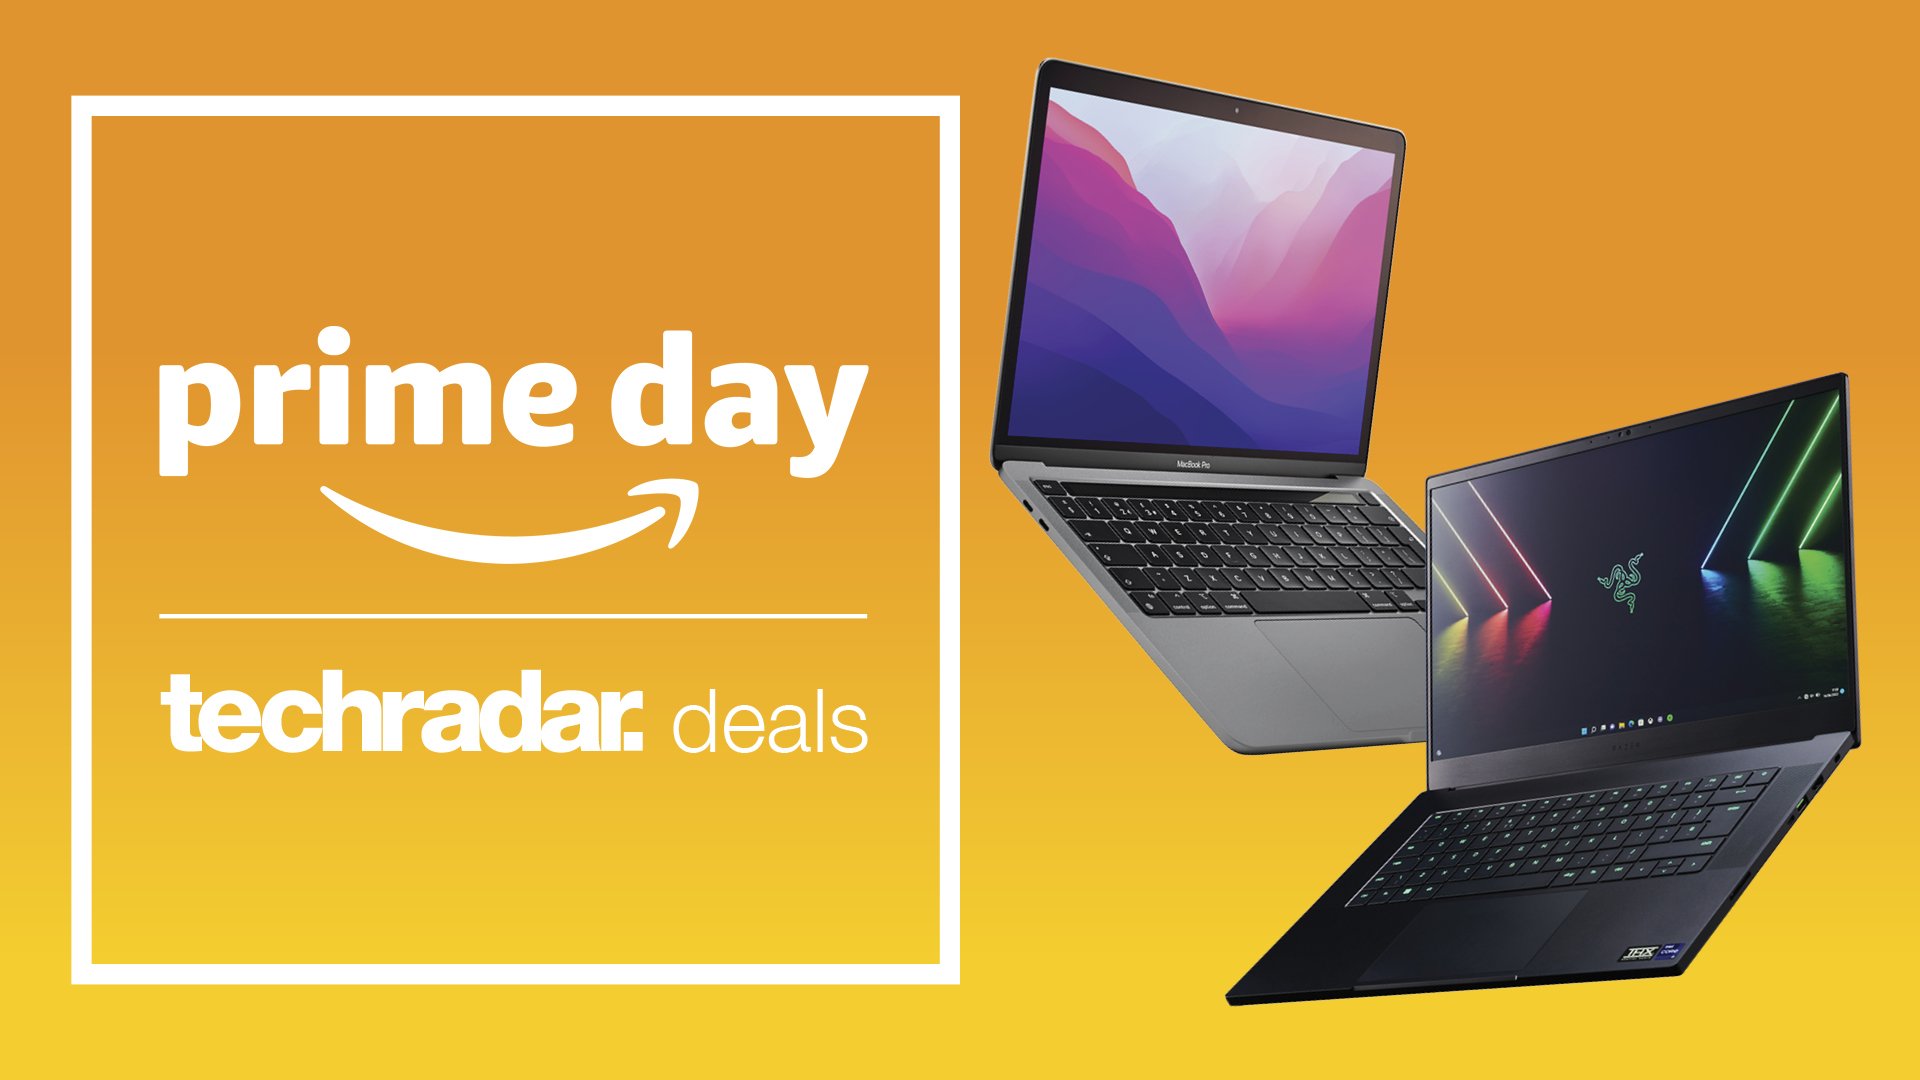 Amazon Prime Day Laptop นำเสนอภาพส่วนหัวพร้อมแล็ปท็อปสองเครื่องบนพื้นหลังสีเหลือง